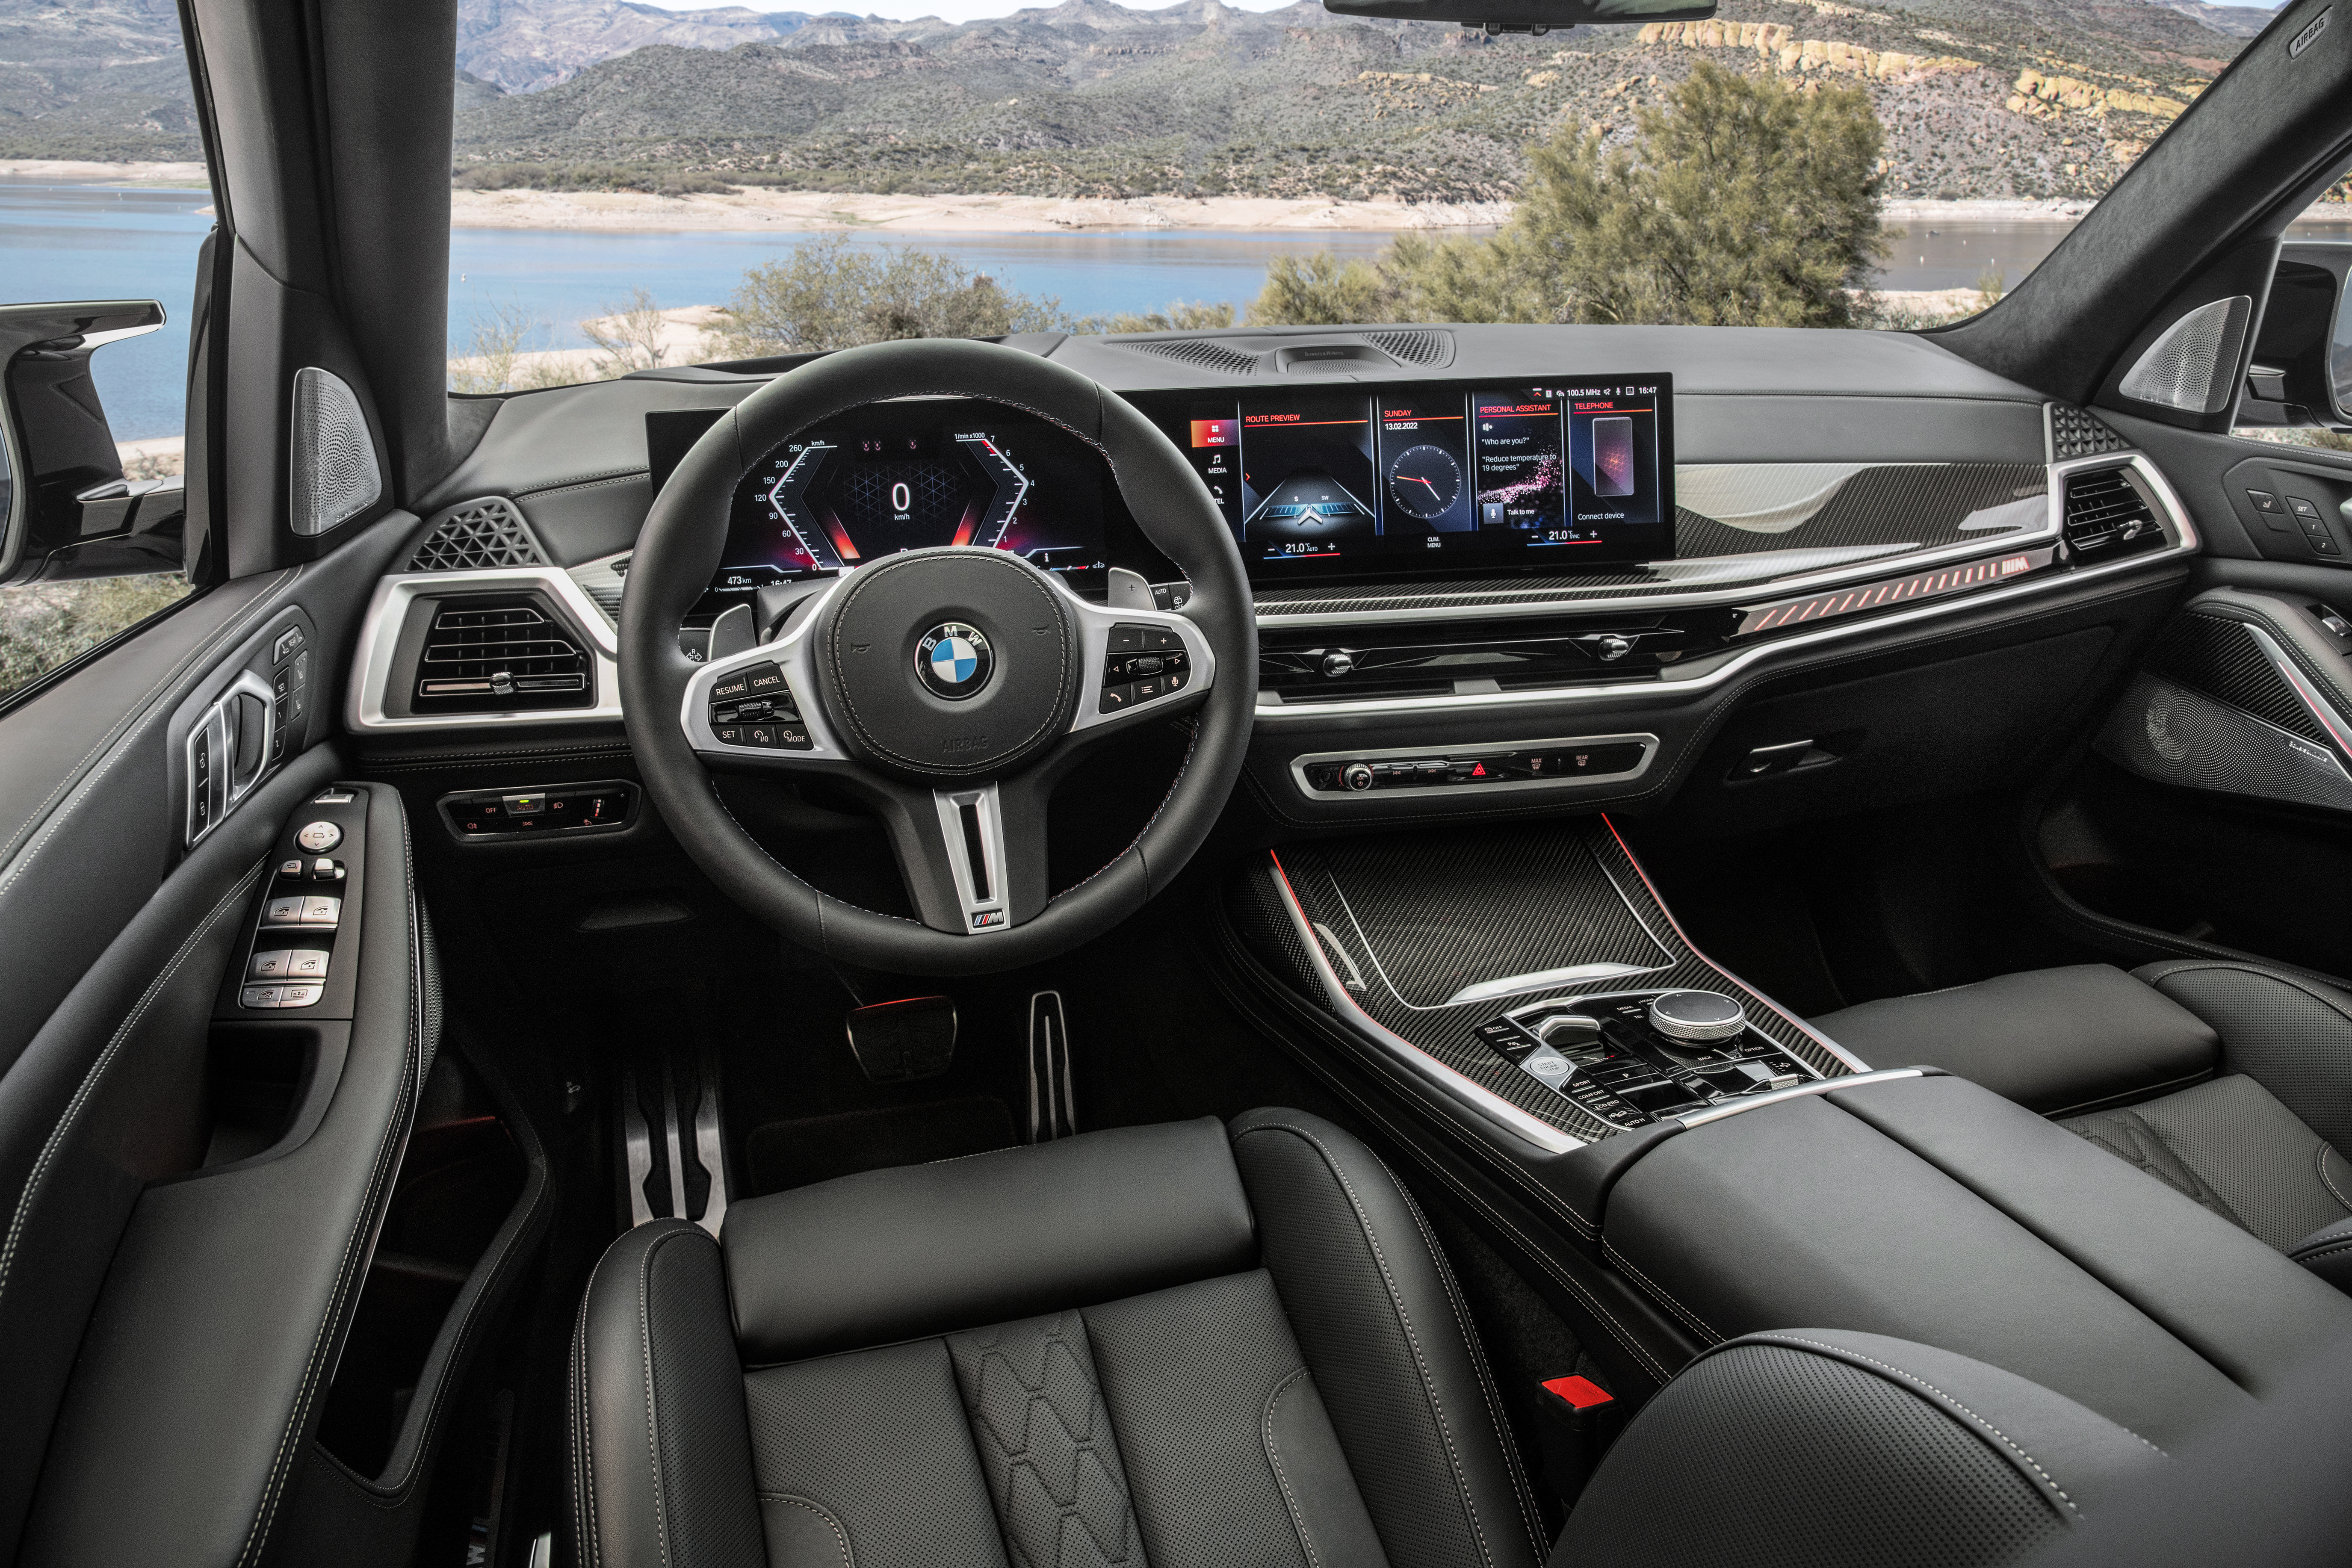 BMW X7 interior.jpg